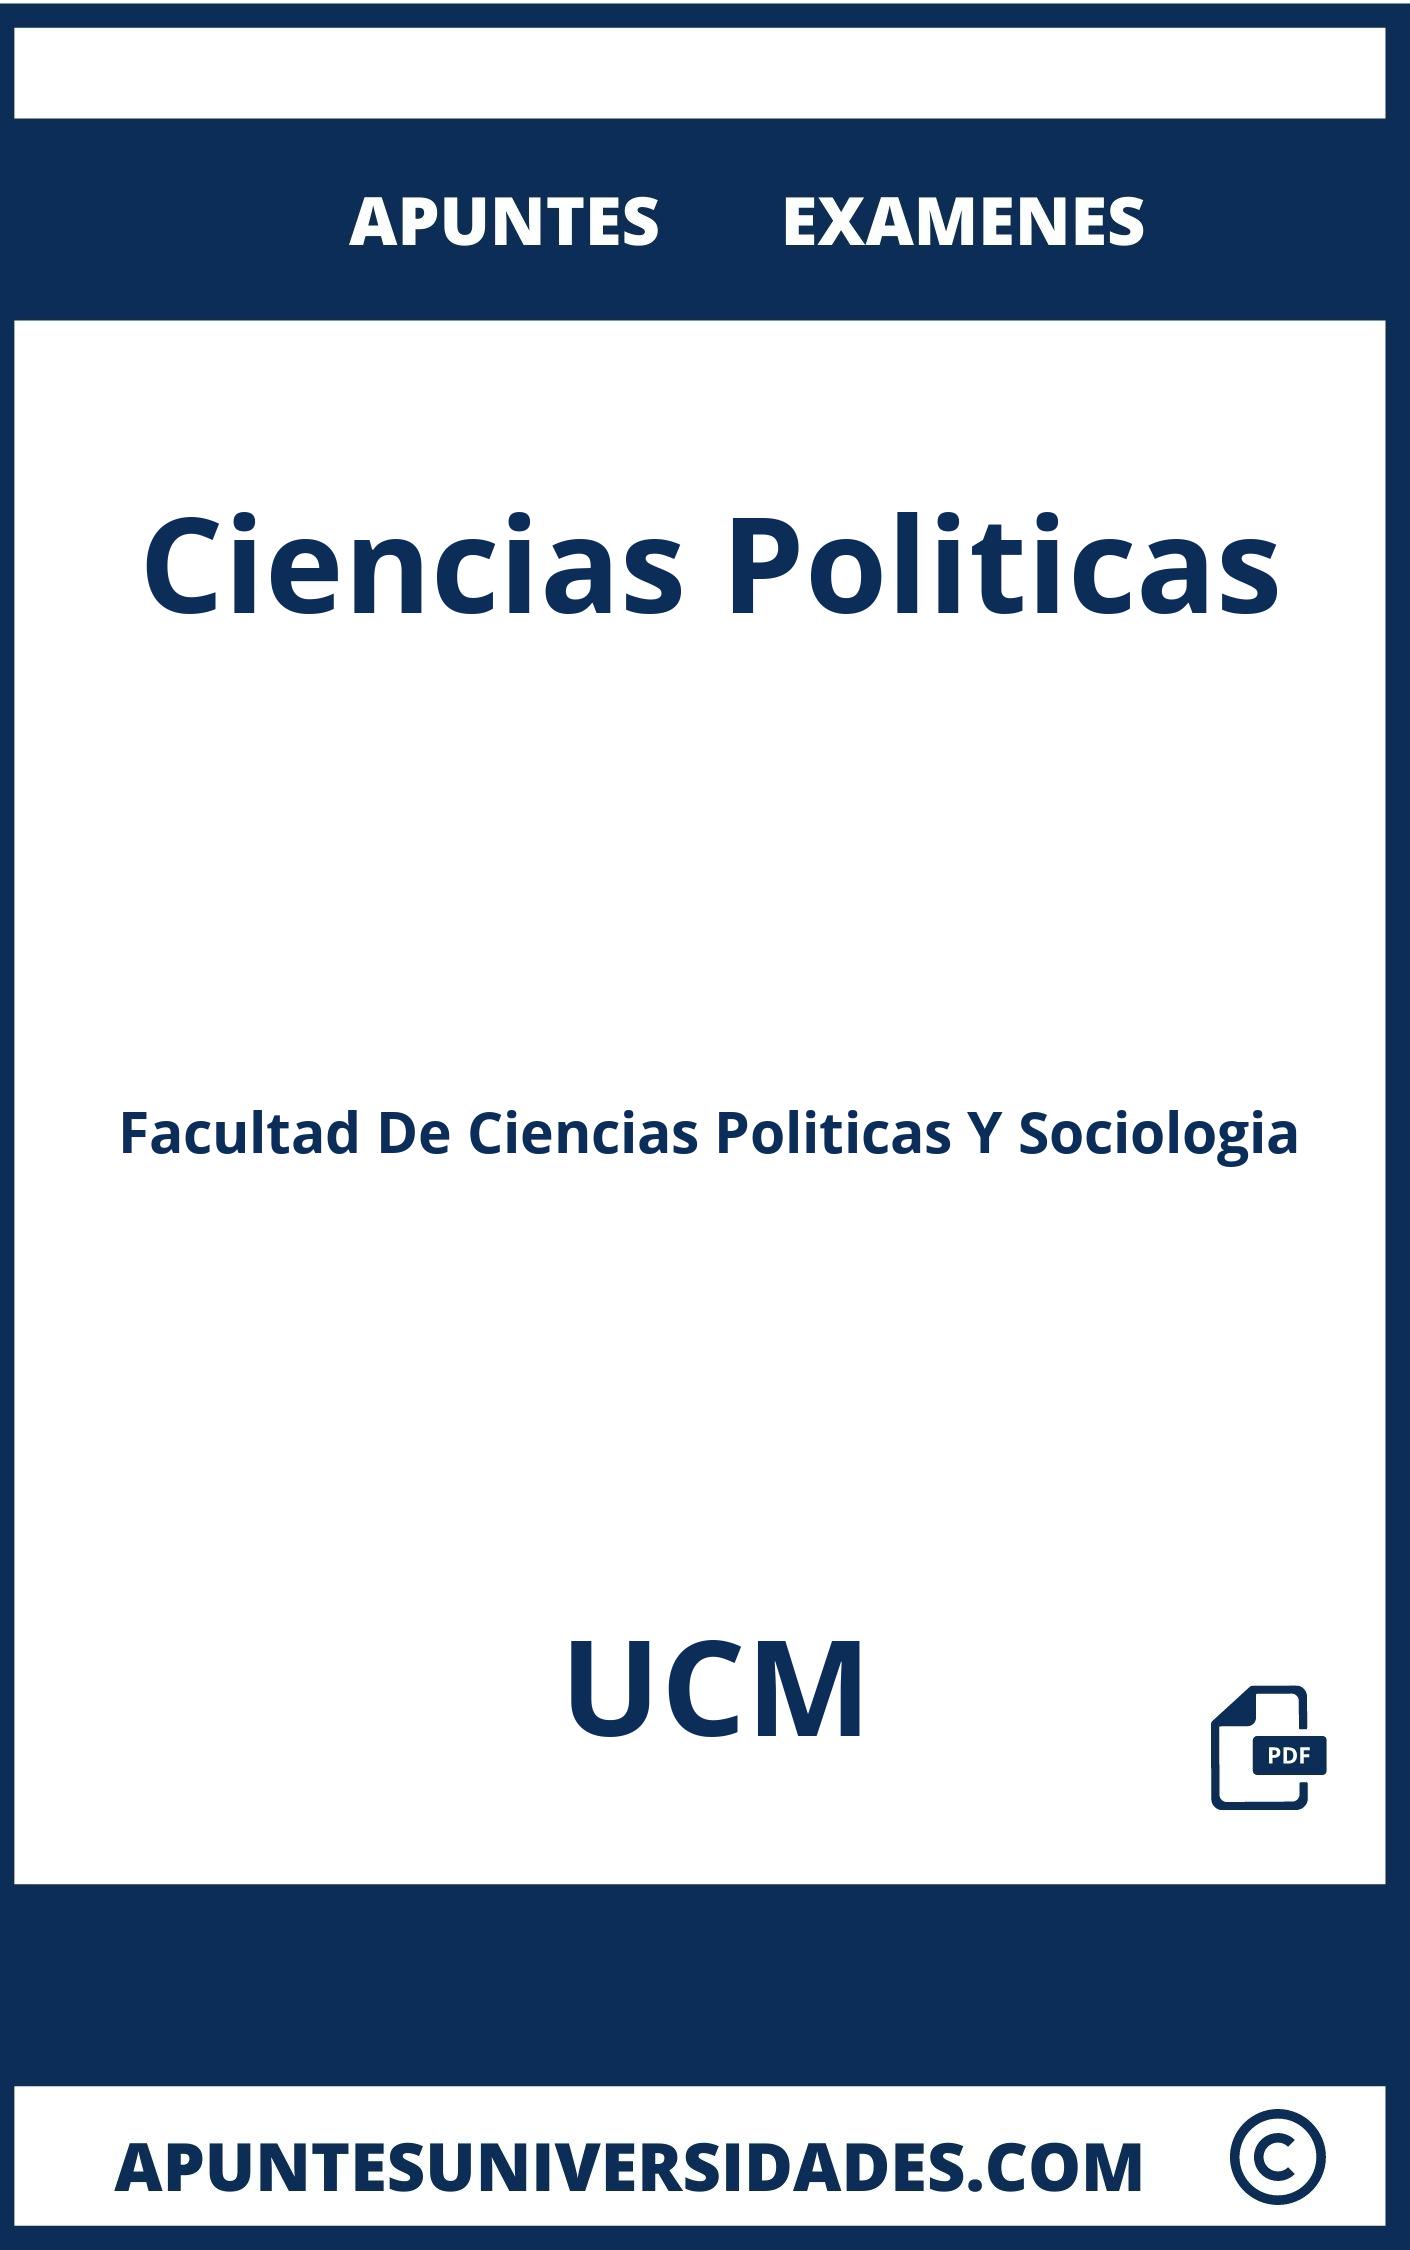 Apuntes y Examenes de Ciencias Politicas UCM